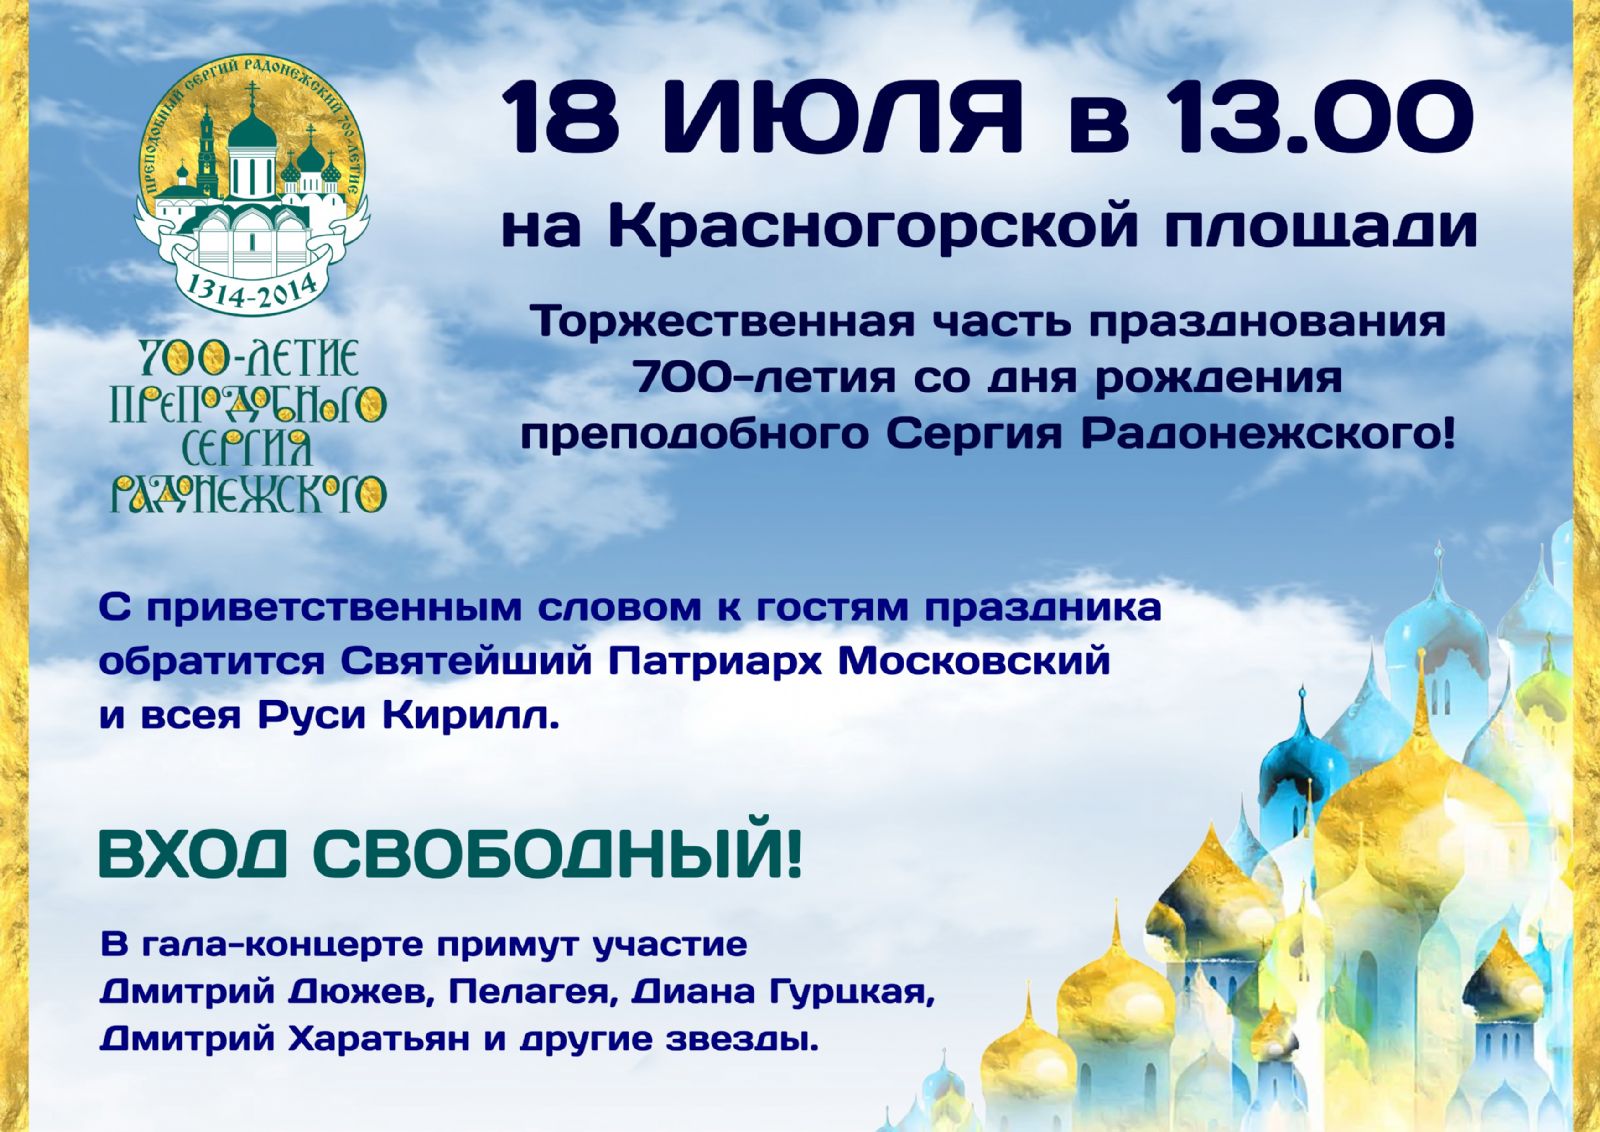 гала-концерт, посвященный празднованию 700-летию преподобного Сергия Радонежского